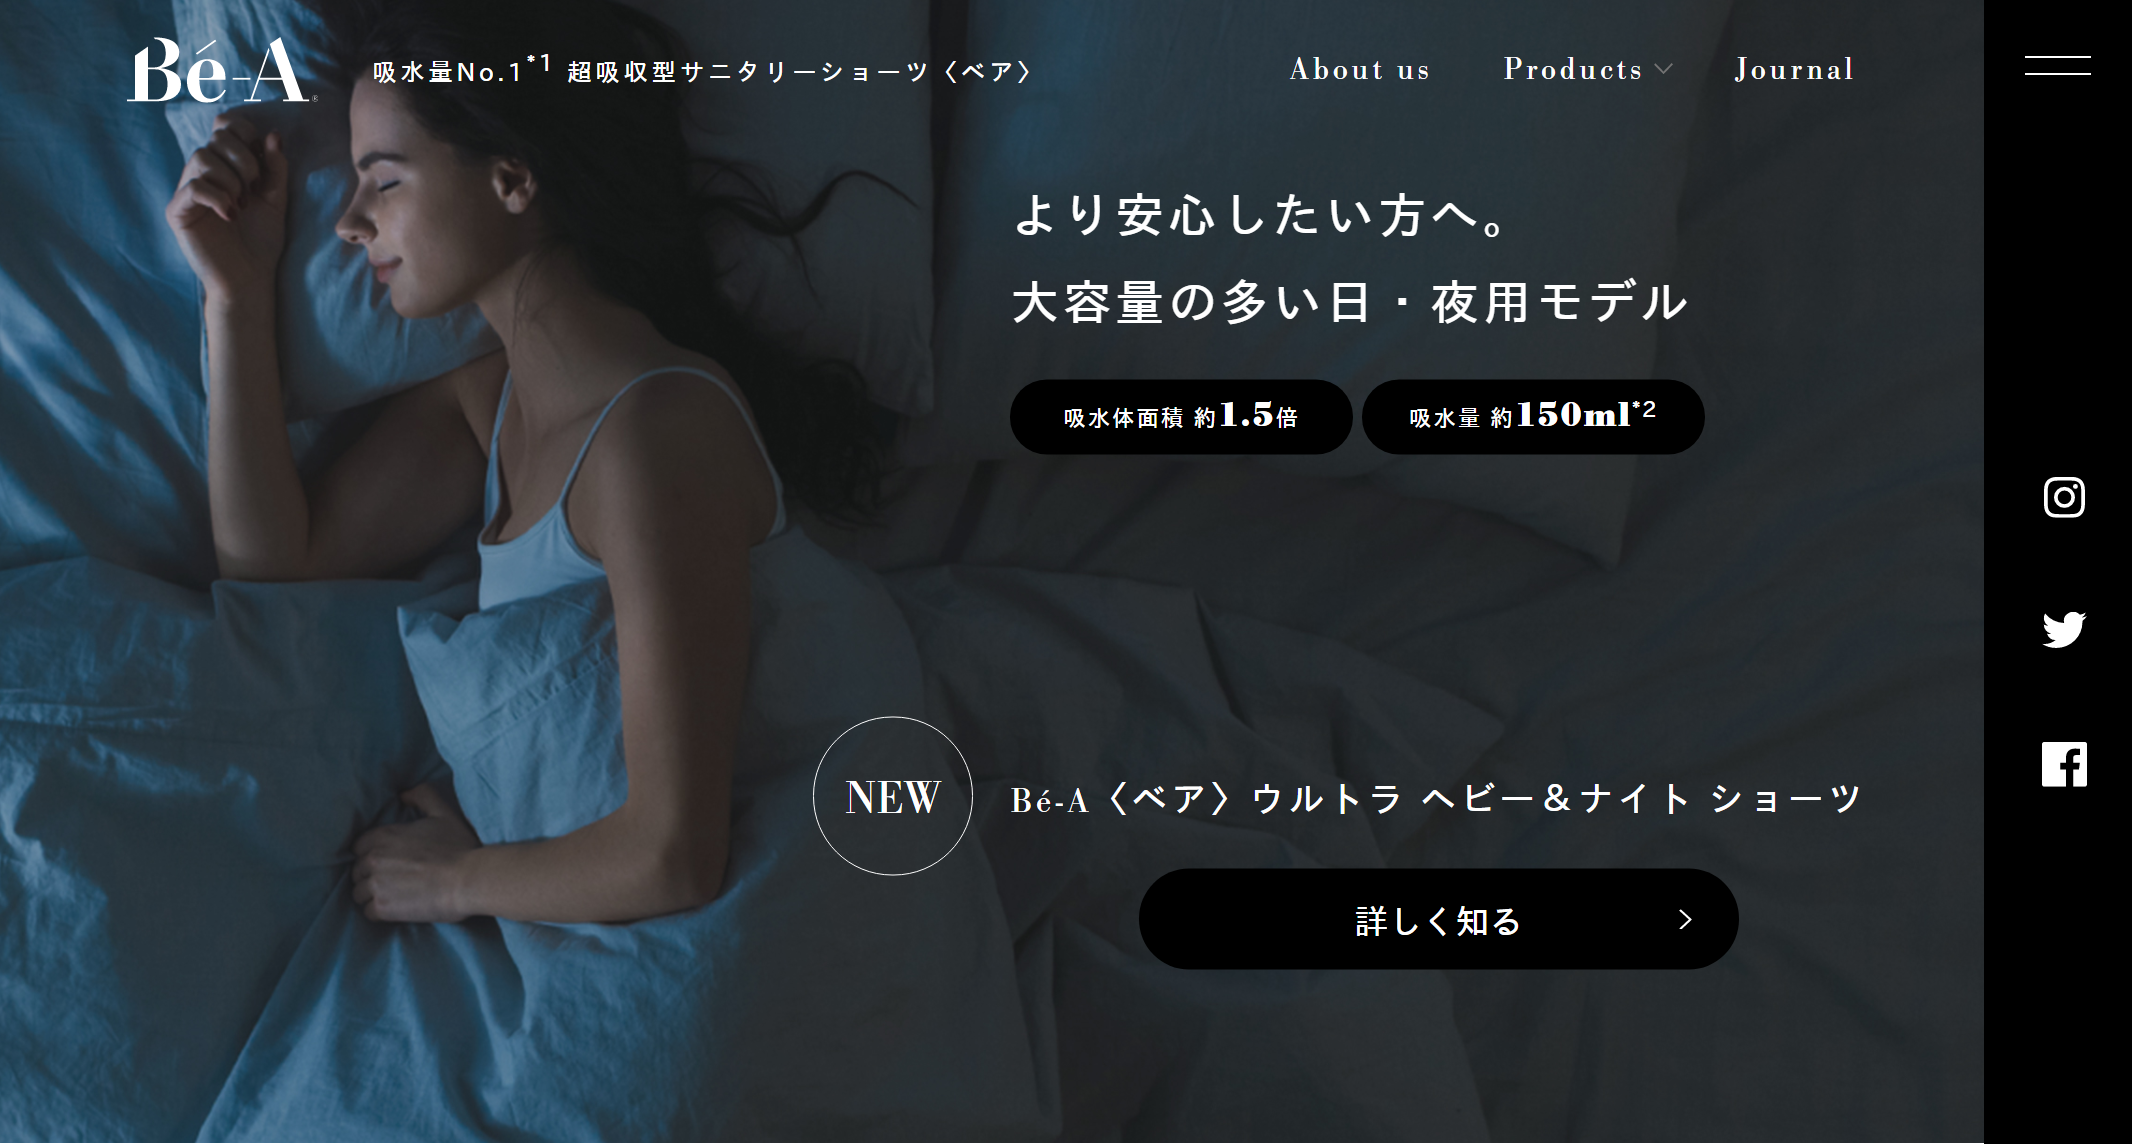 日本生理裤创业品牌 Bé-A Japan 完成1.8亿日元种子轮融资